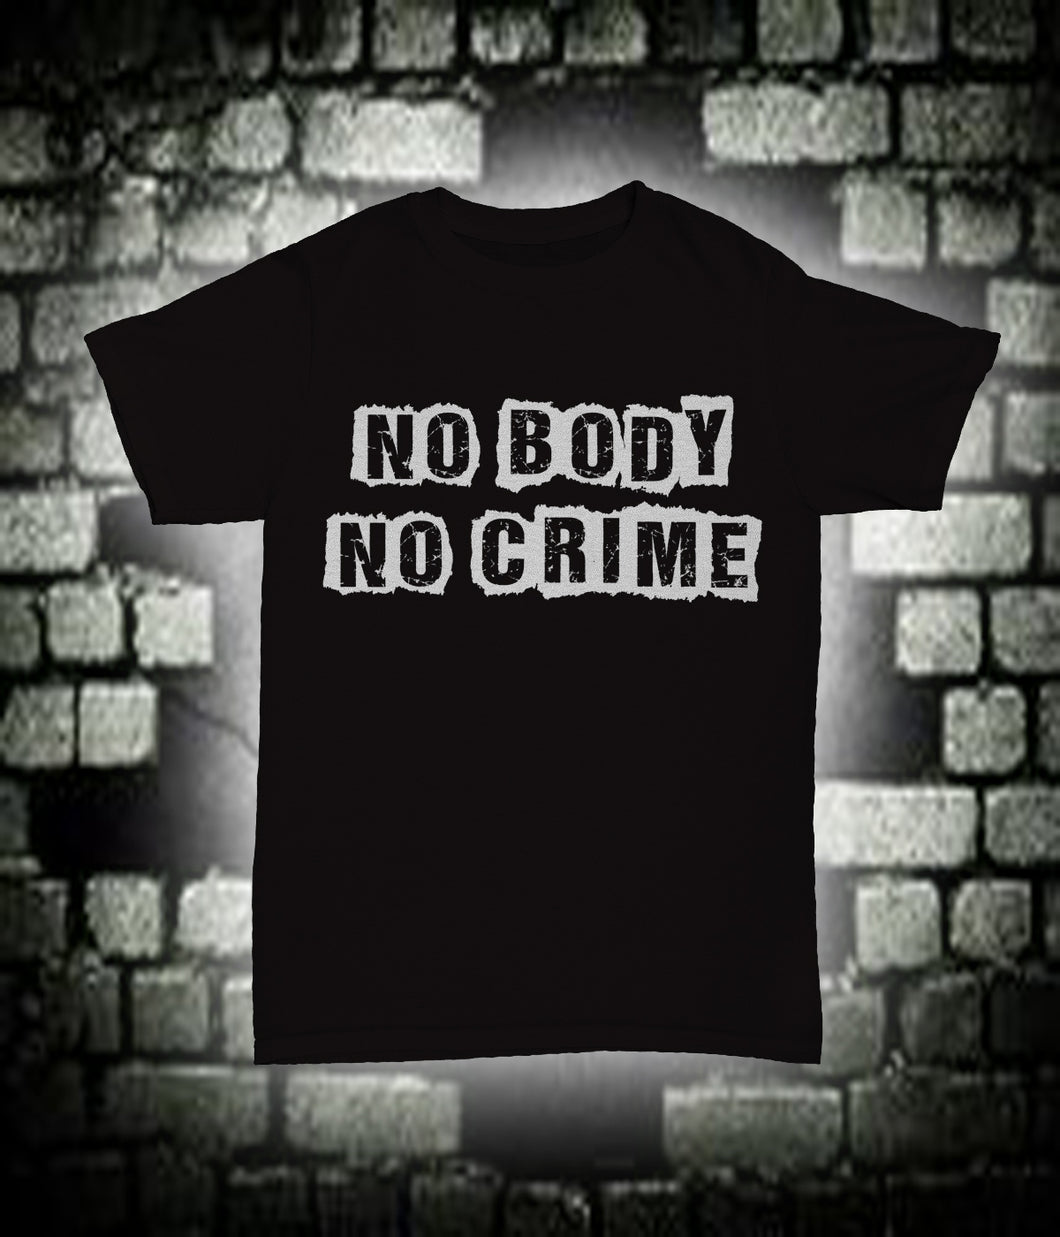 No Body No Crime